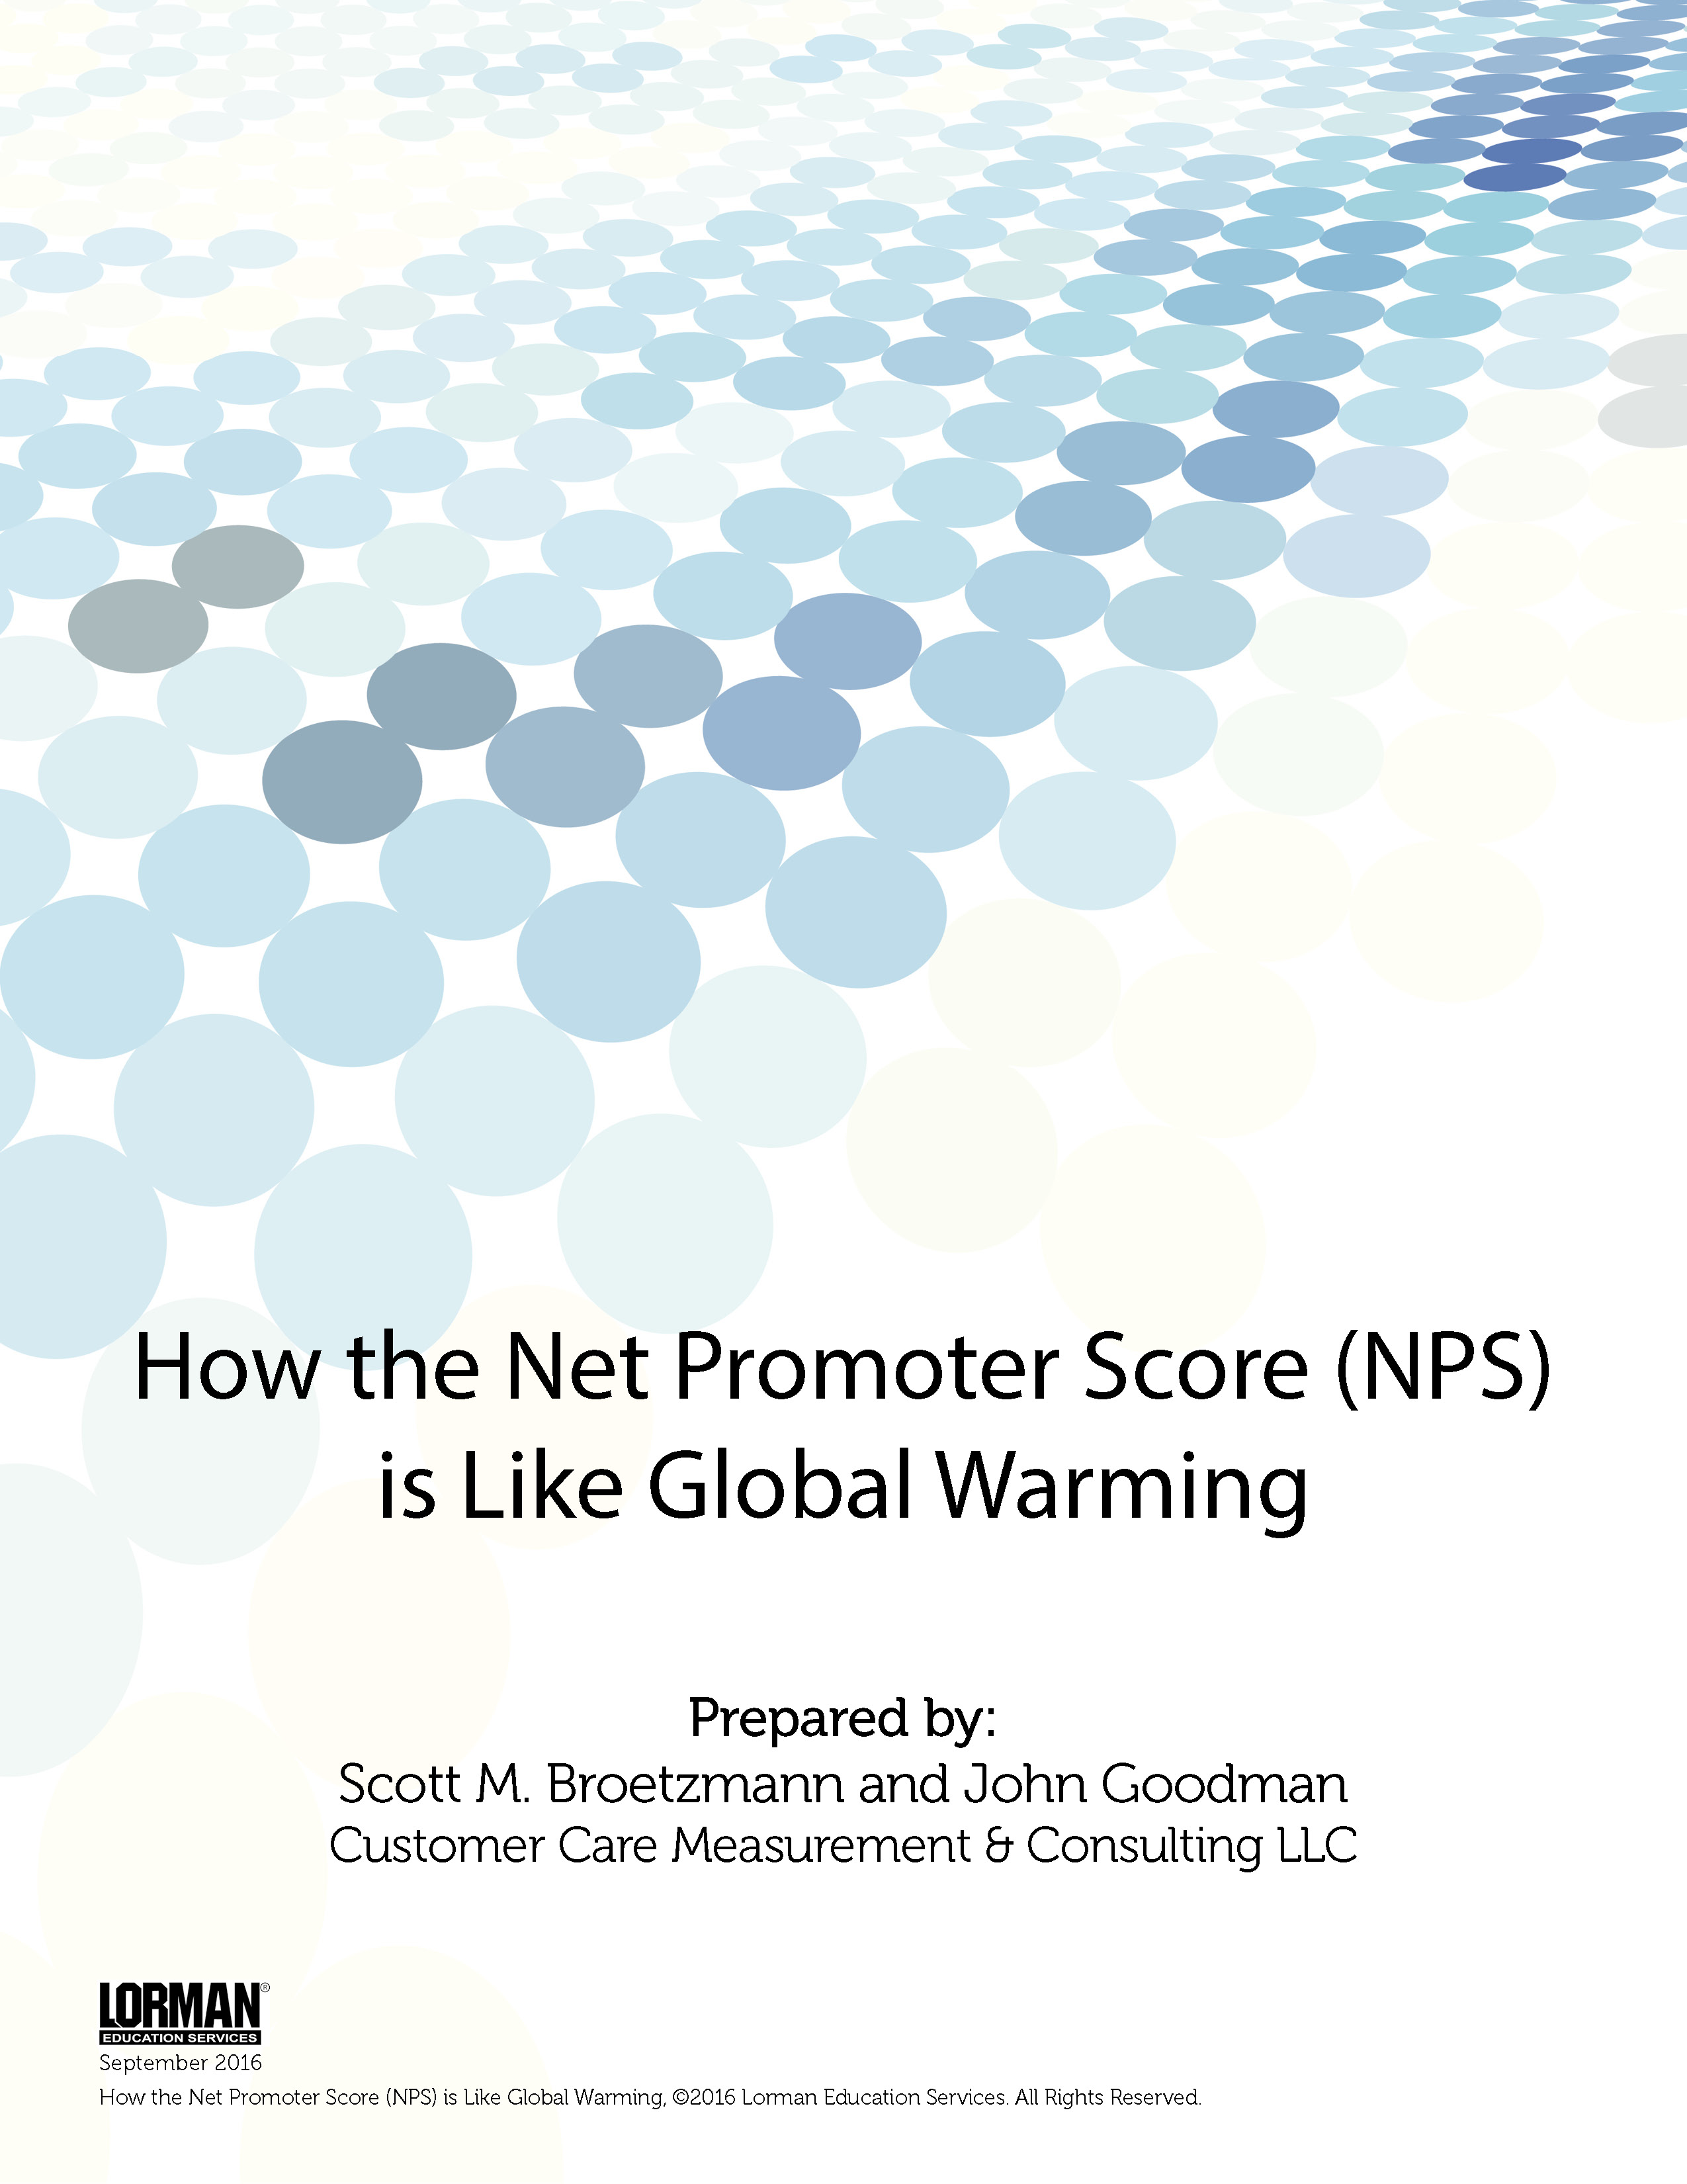 How the Net Promoter Score (NPS) is Like Global Warming